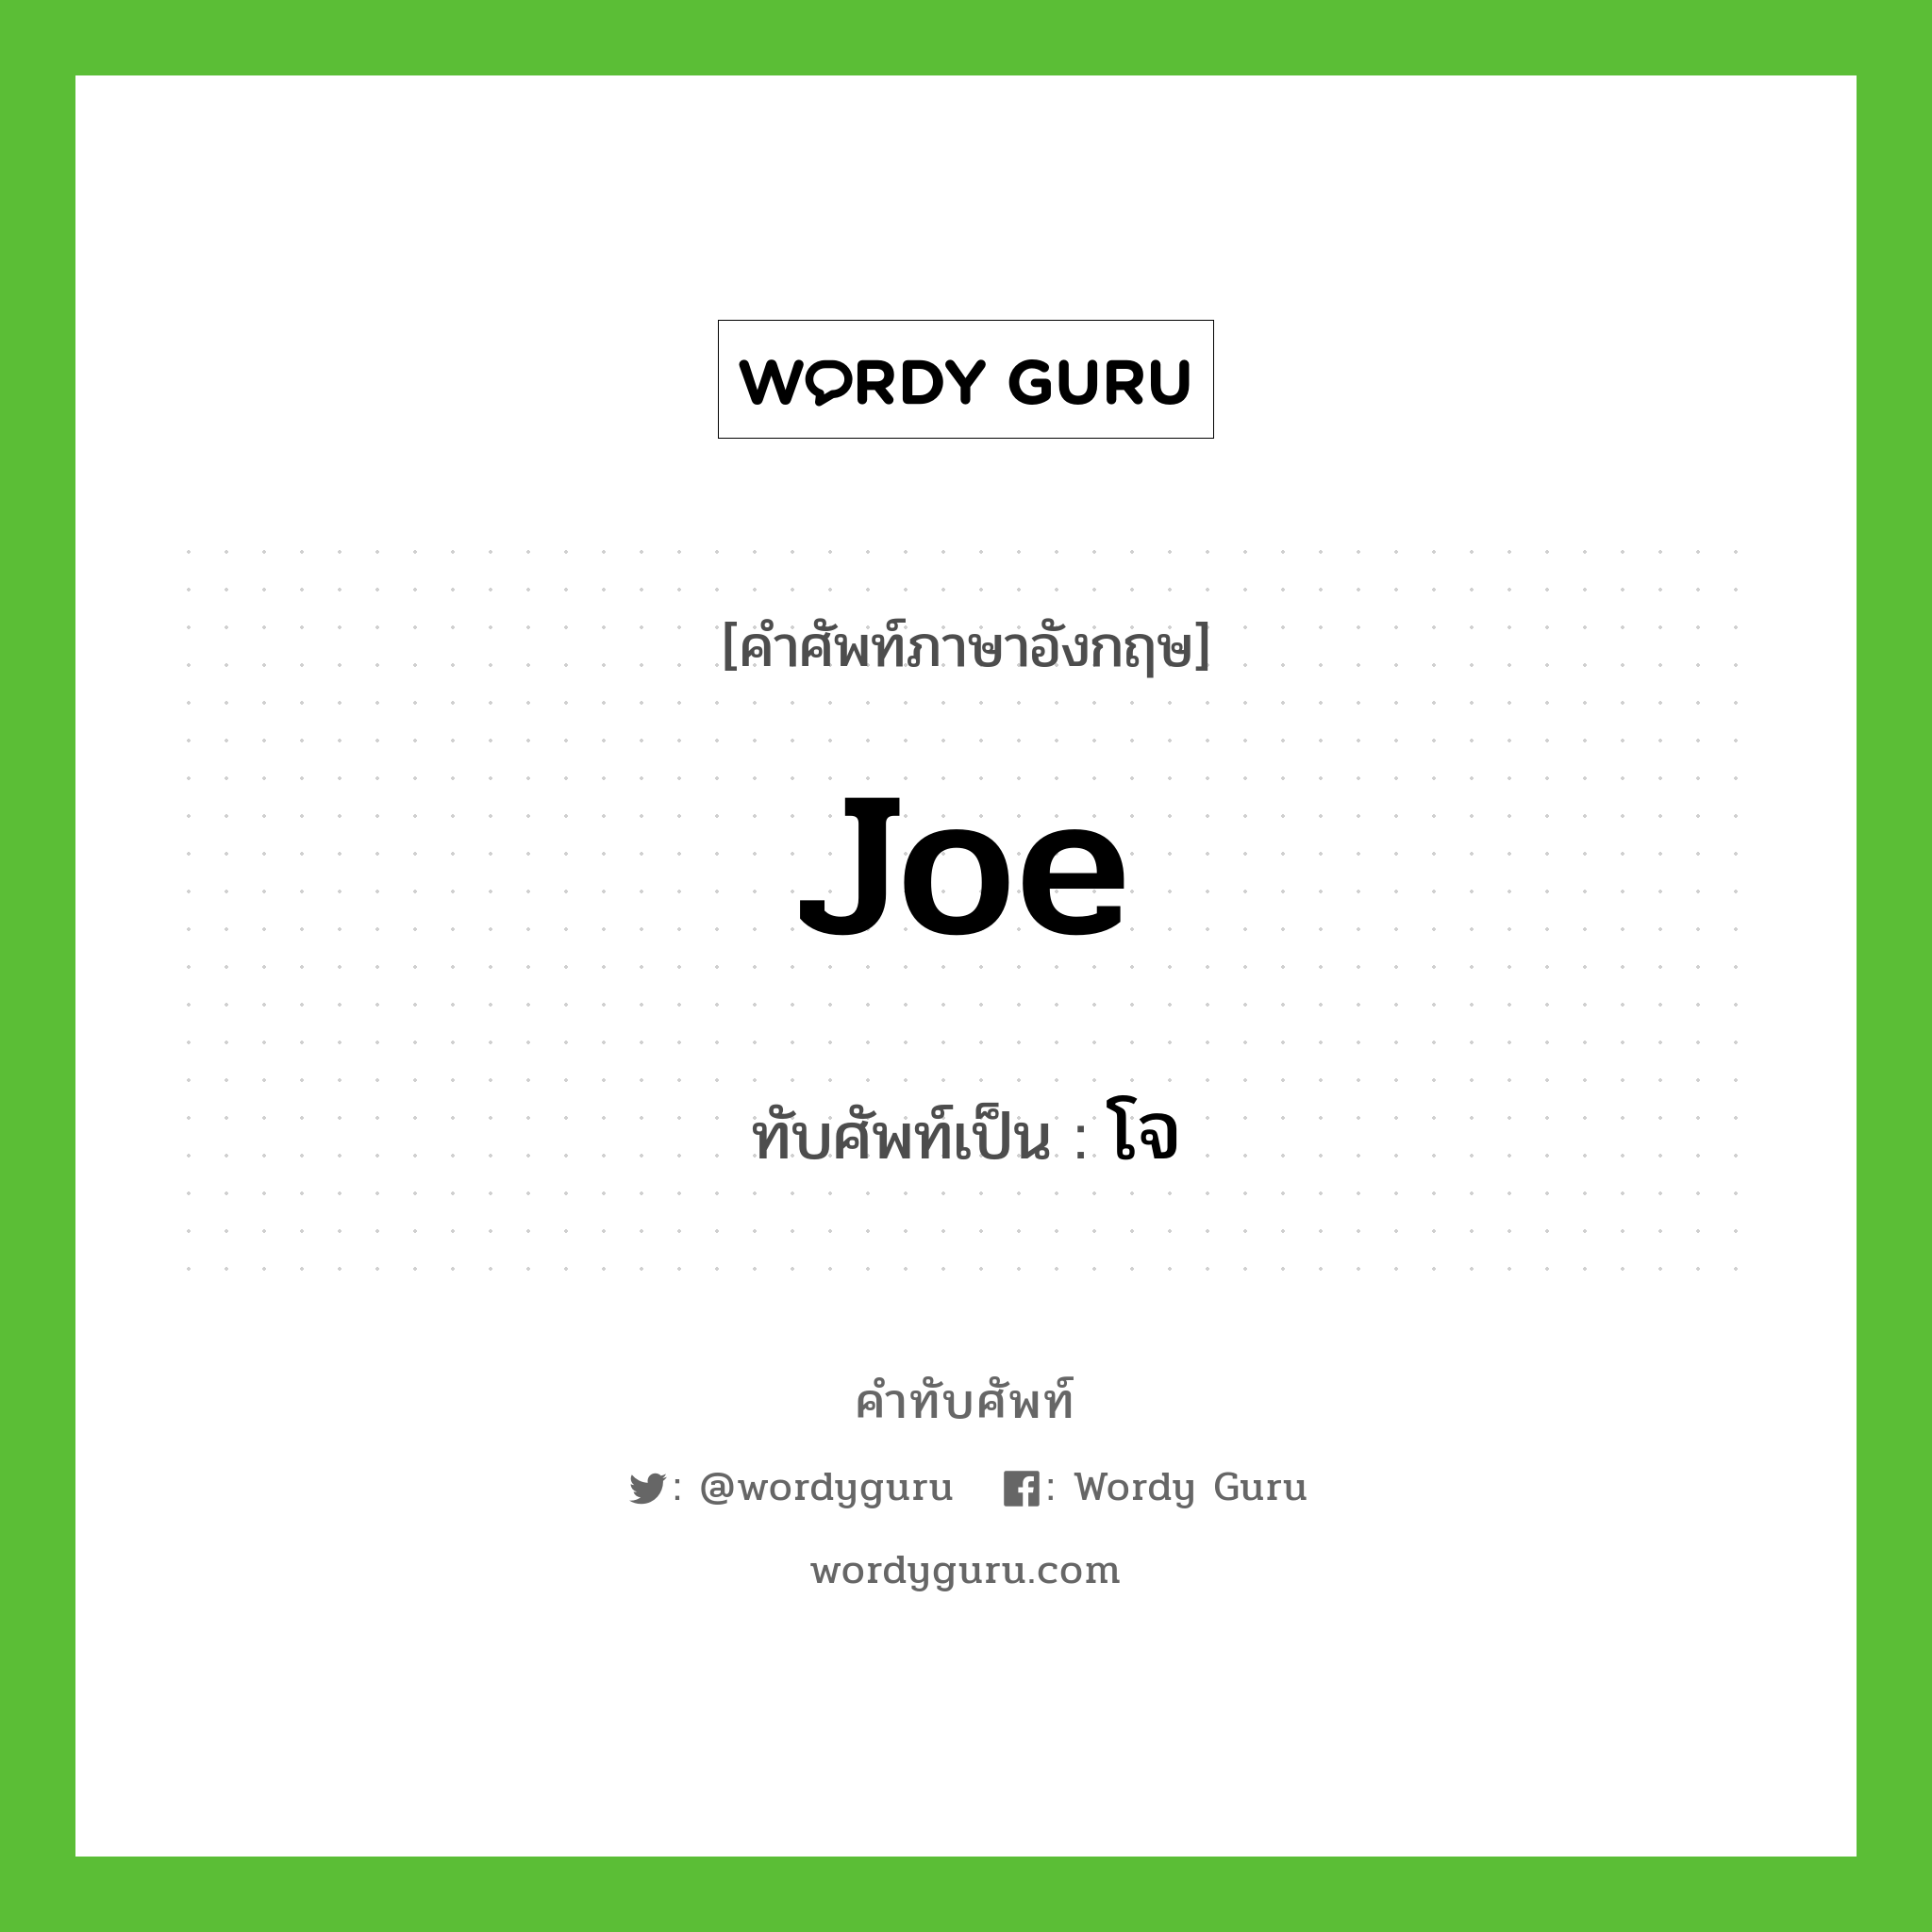 Joe เขียนเป็นคำไทยว่าอะไร?, คำศัพท์ภาษาอังกฤษ Joe ทับศัพท์เป็น โจ